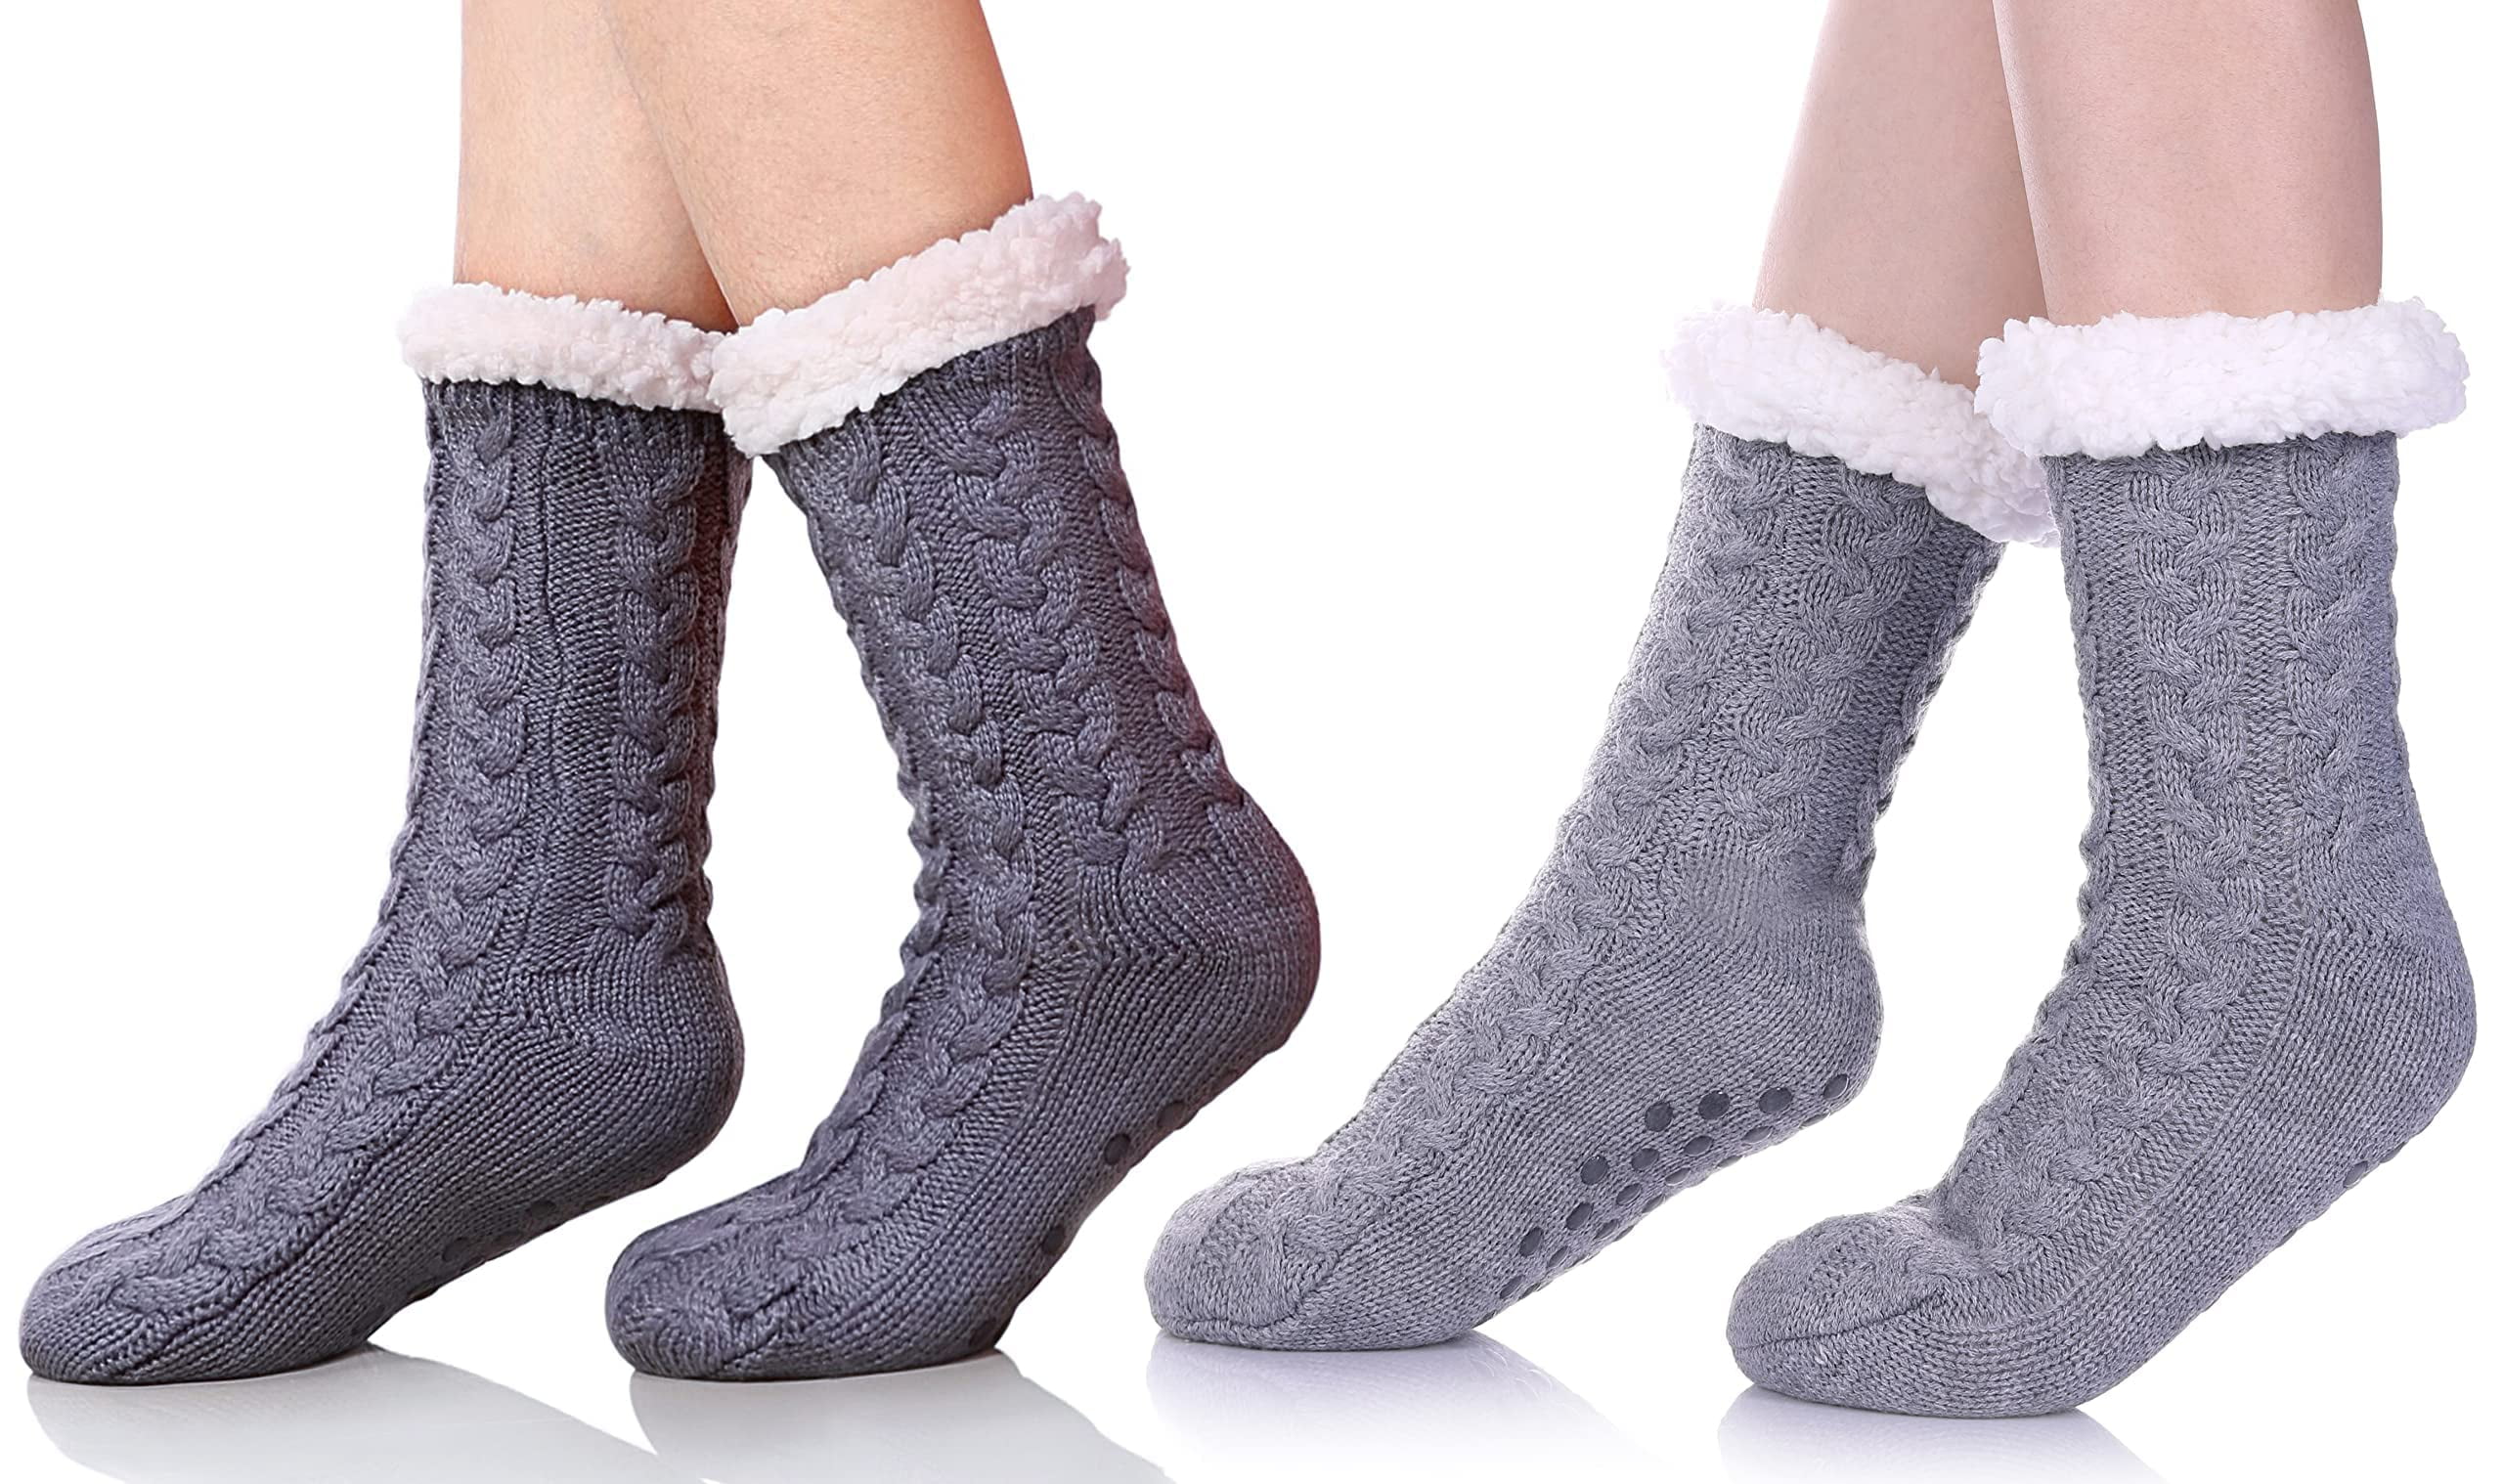 Loritta Women Slipper Fuzzy Socks Fluffy Cozy Cabin Warm Winter Soft ...